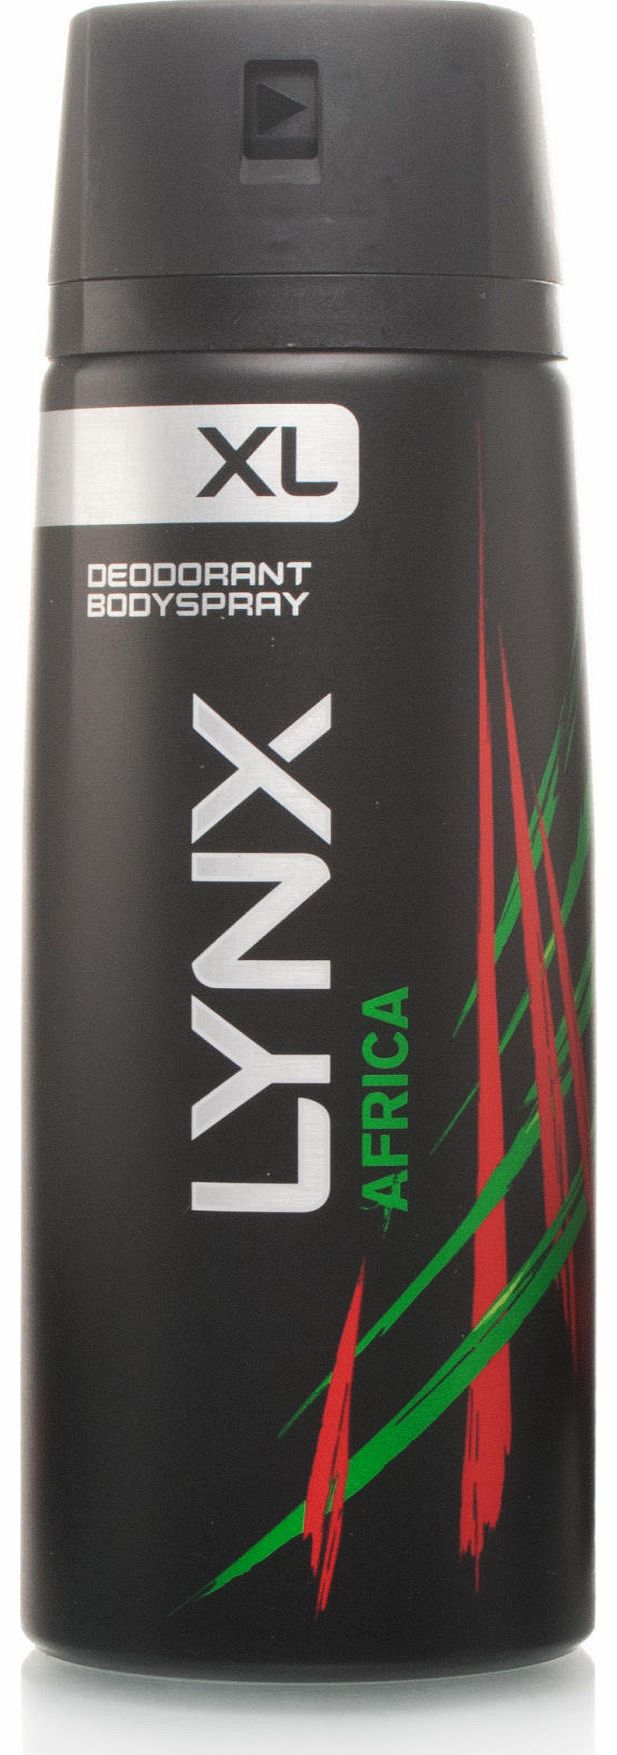 Africa XL Deodorant Bodyspray